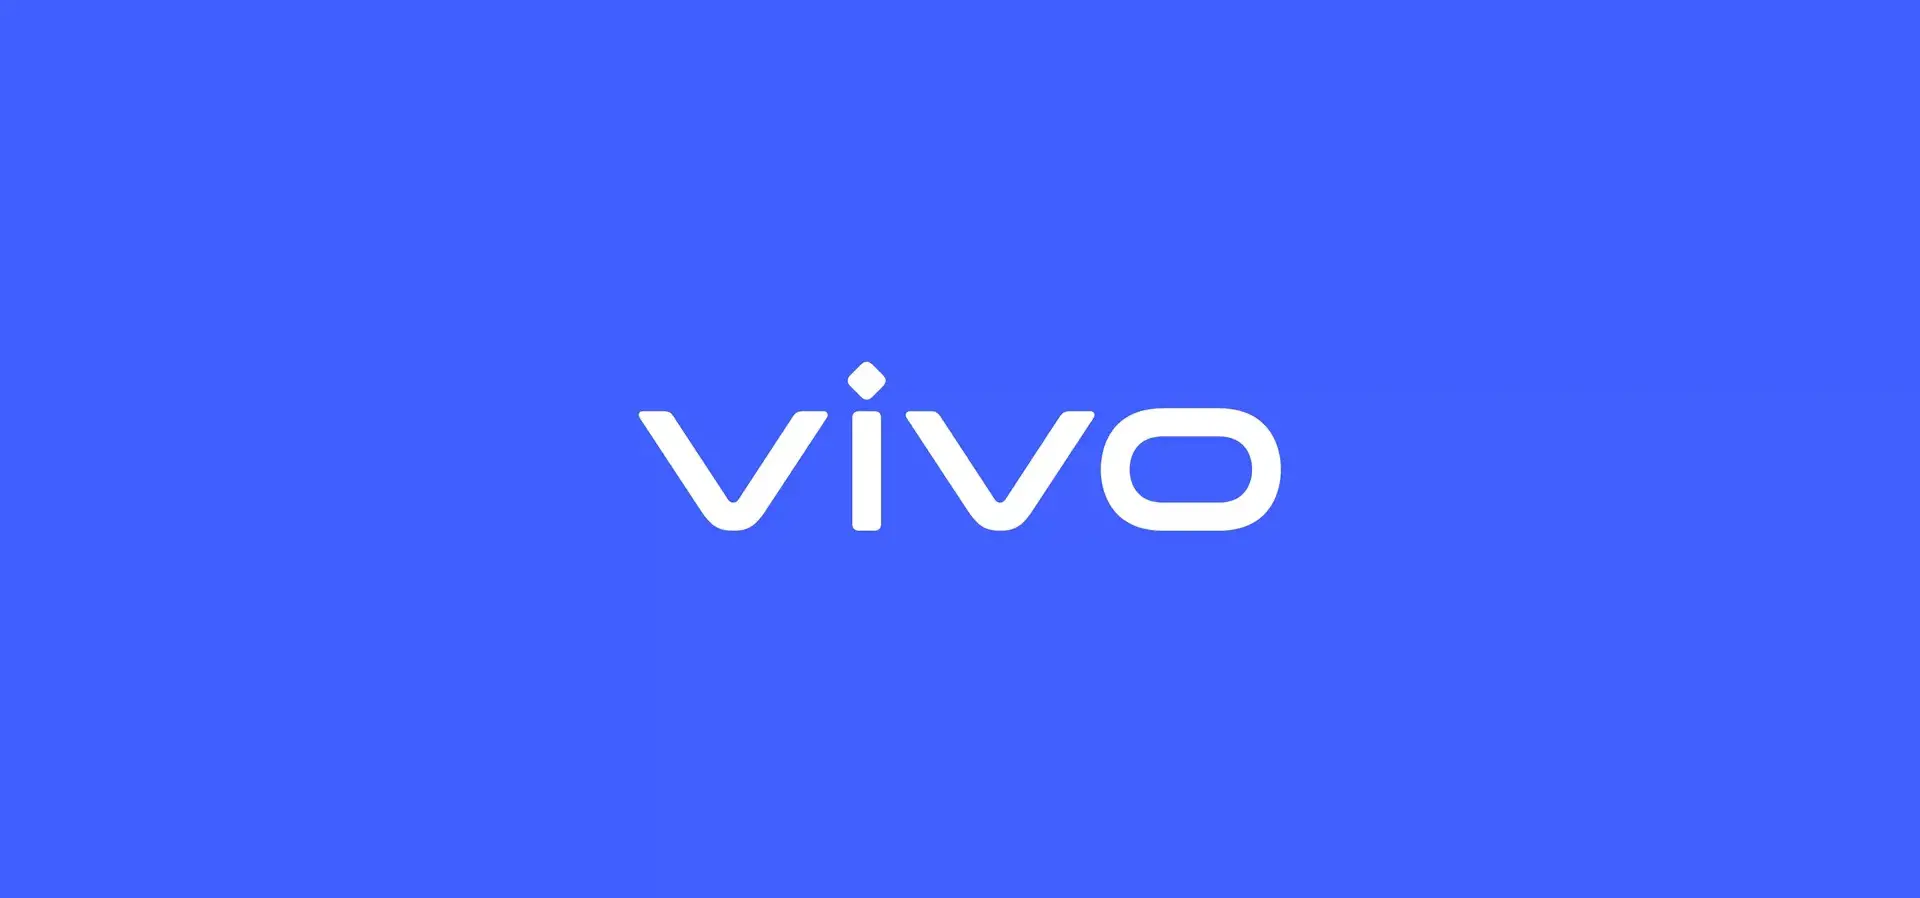 Vivo X50 Pro verskyn in die eerste lewendige foto Vivo V2019A